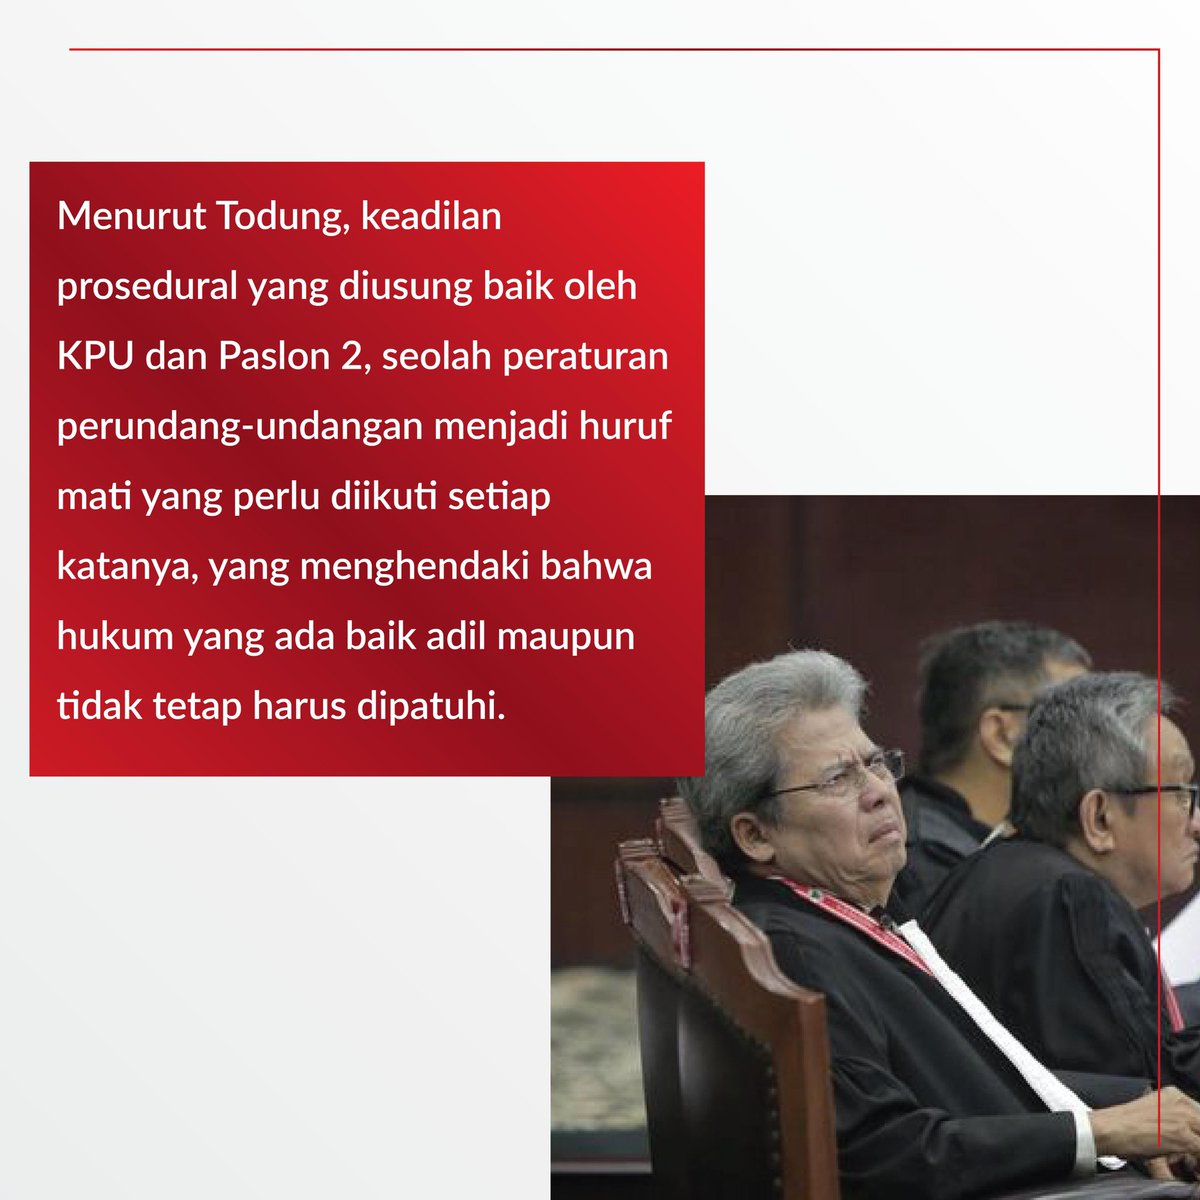 Menurut Ketua Tim Hukum Ganjar-Mahfud, Todung Mulya Lubis, Sidang PHPU menggambarkan perseteruan Rule by Law dan Rule of Law. 

#ganjarmahfud #KabarGAMA #mahkamahkonstitusi